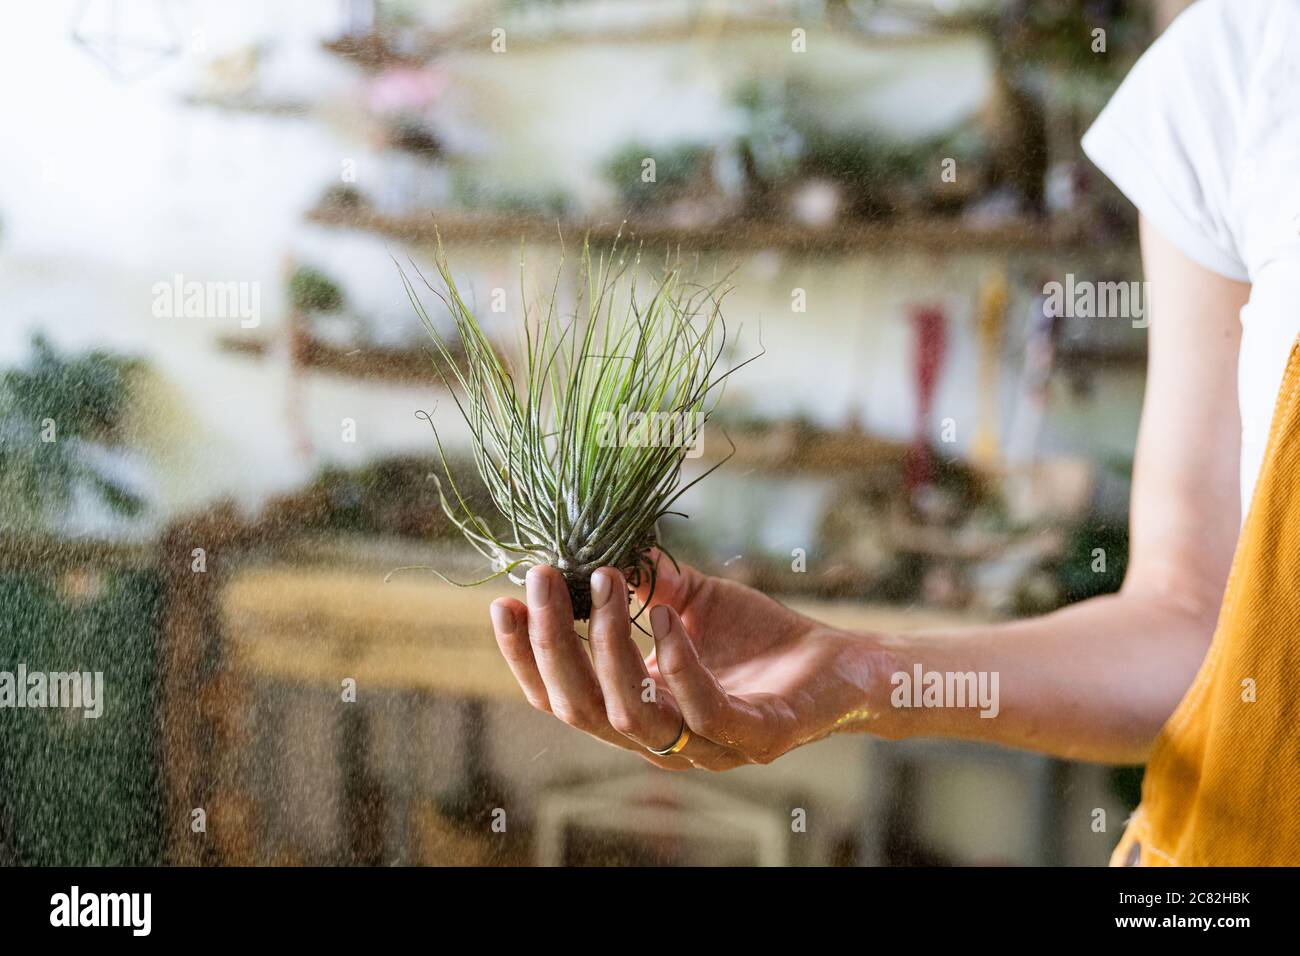 Gros plan de la fleuriste femme dans des salopettes, tenant dans sa main humide et pulvérisant de l'air usine tillandsia à la maison de jardin/serre, prenant soin des plantes de maison Banque D'Images